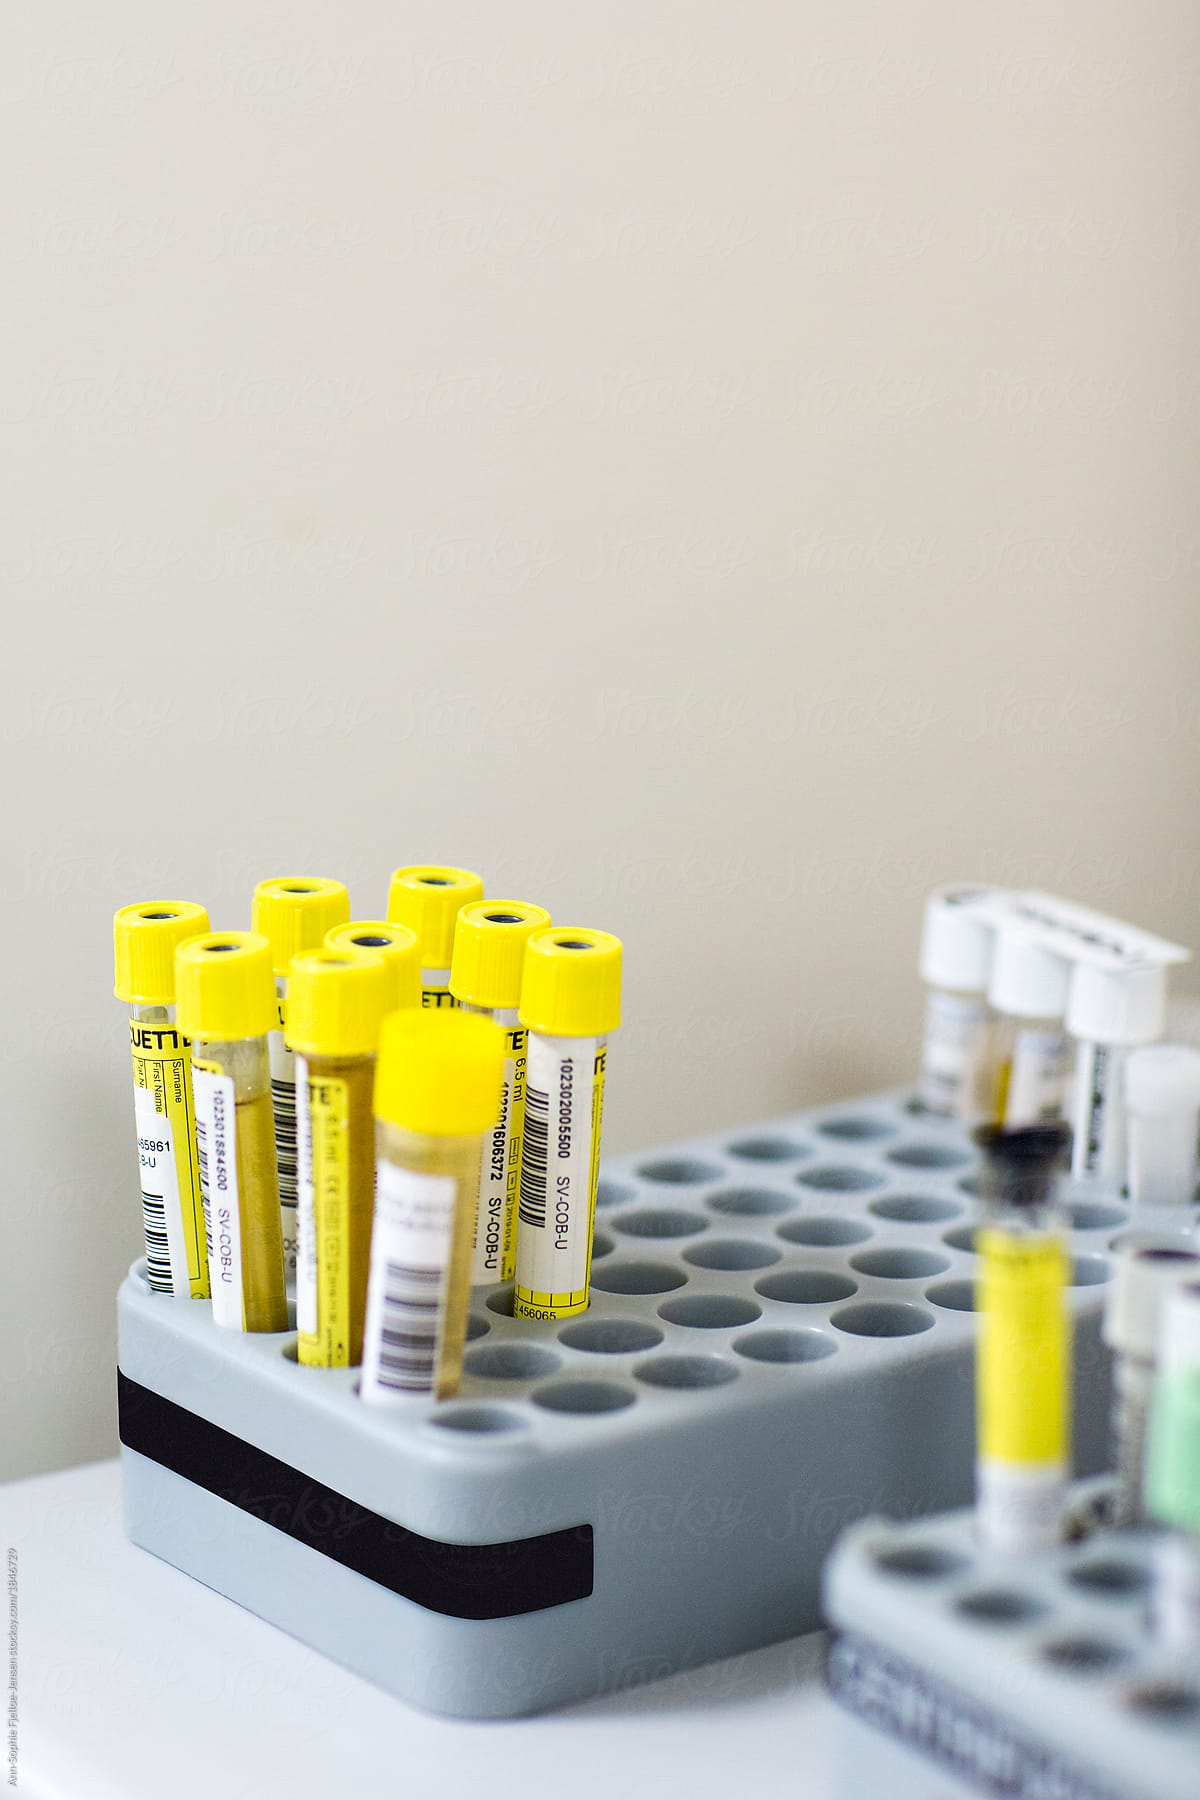 Blood sample tubes